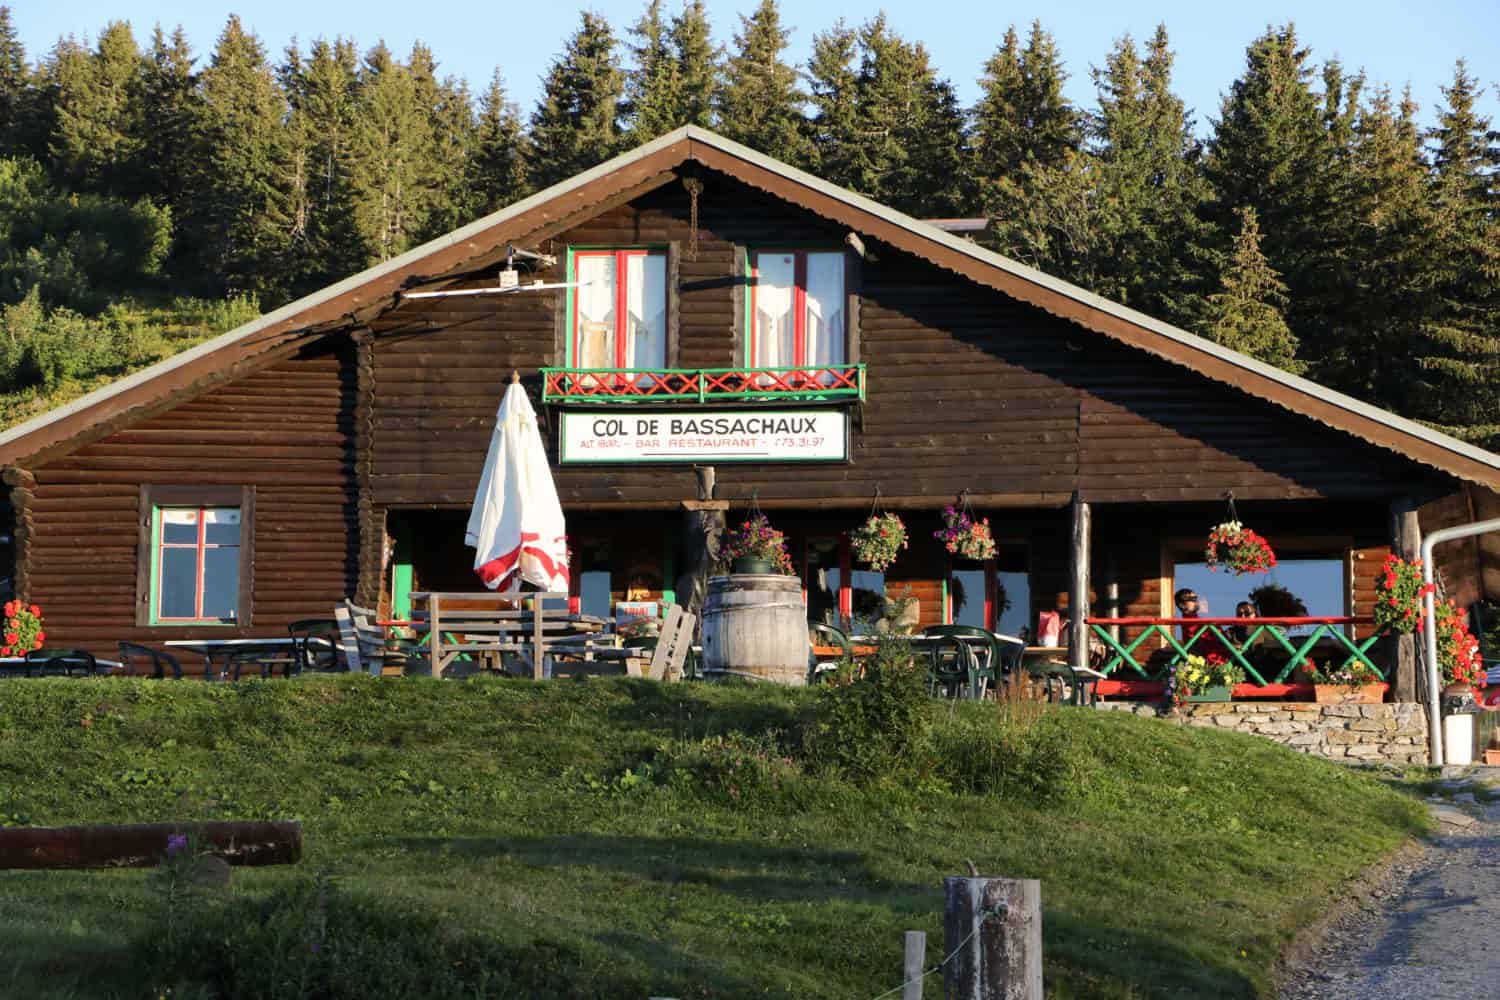 The restaurant at Col de Bassachaux